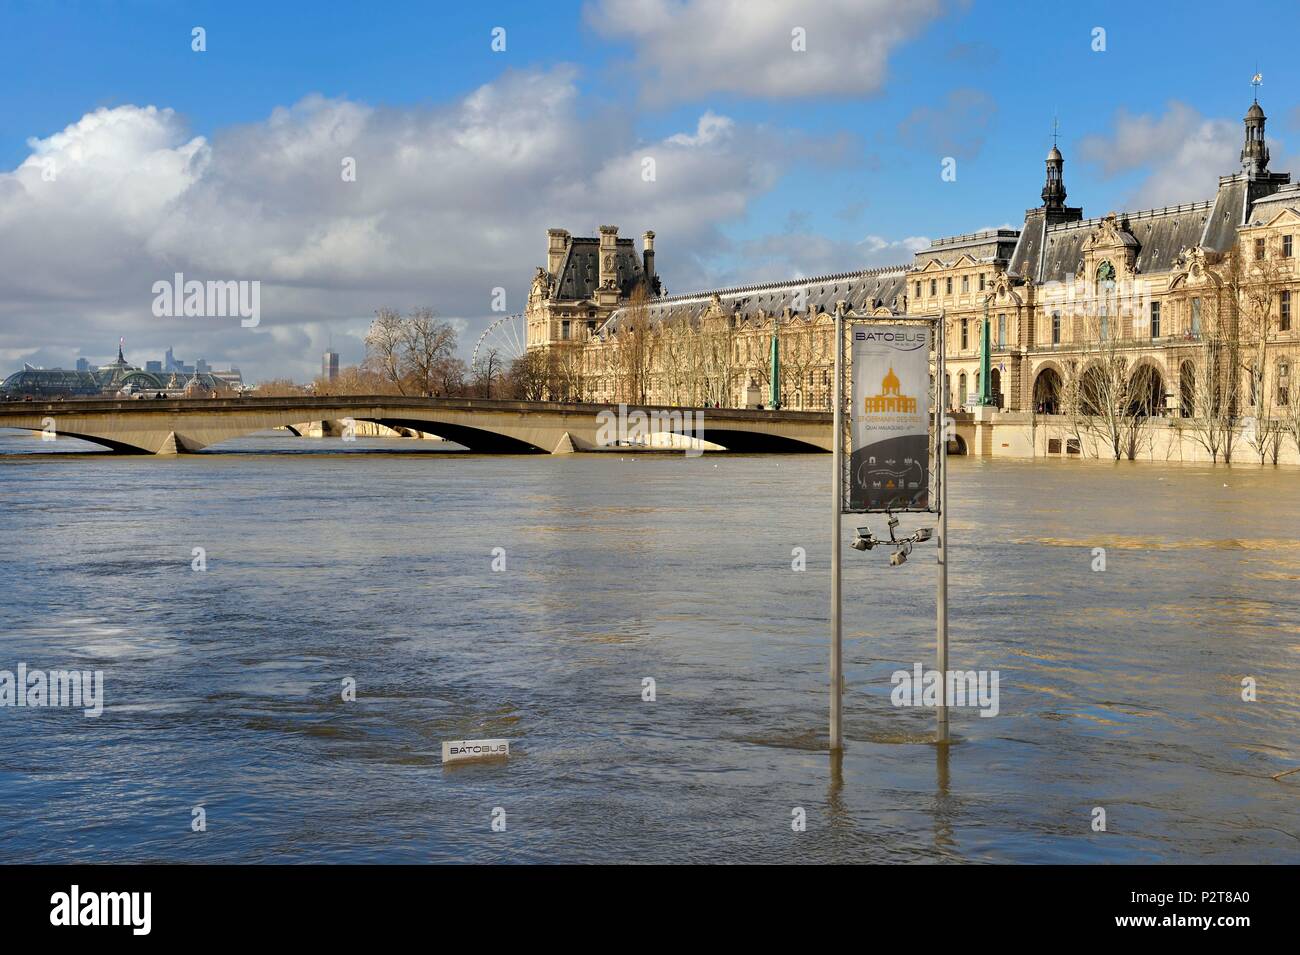 France, Paris, région classée au Patrimoine Mondial de l'UNESCO, l'inondation de la Seine de janvier 2018, le Batobus arrêt au quai Malaquais, dans l'arrière-plan le pont du Carrousel et le Louvre Banque D'Images